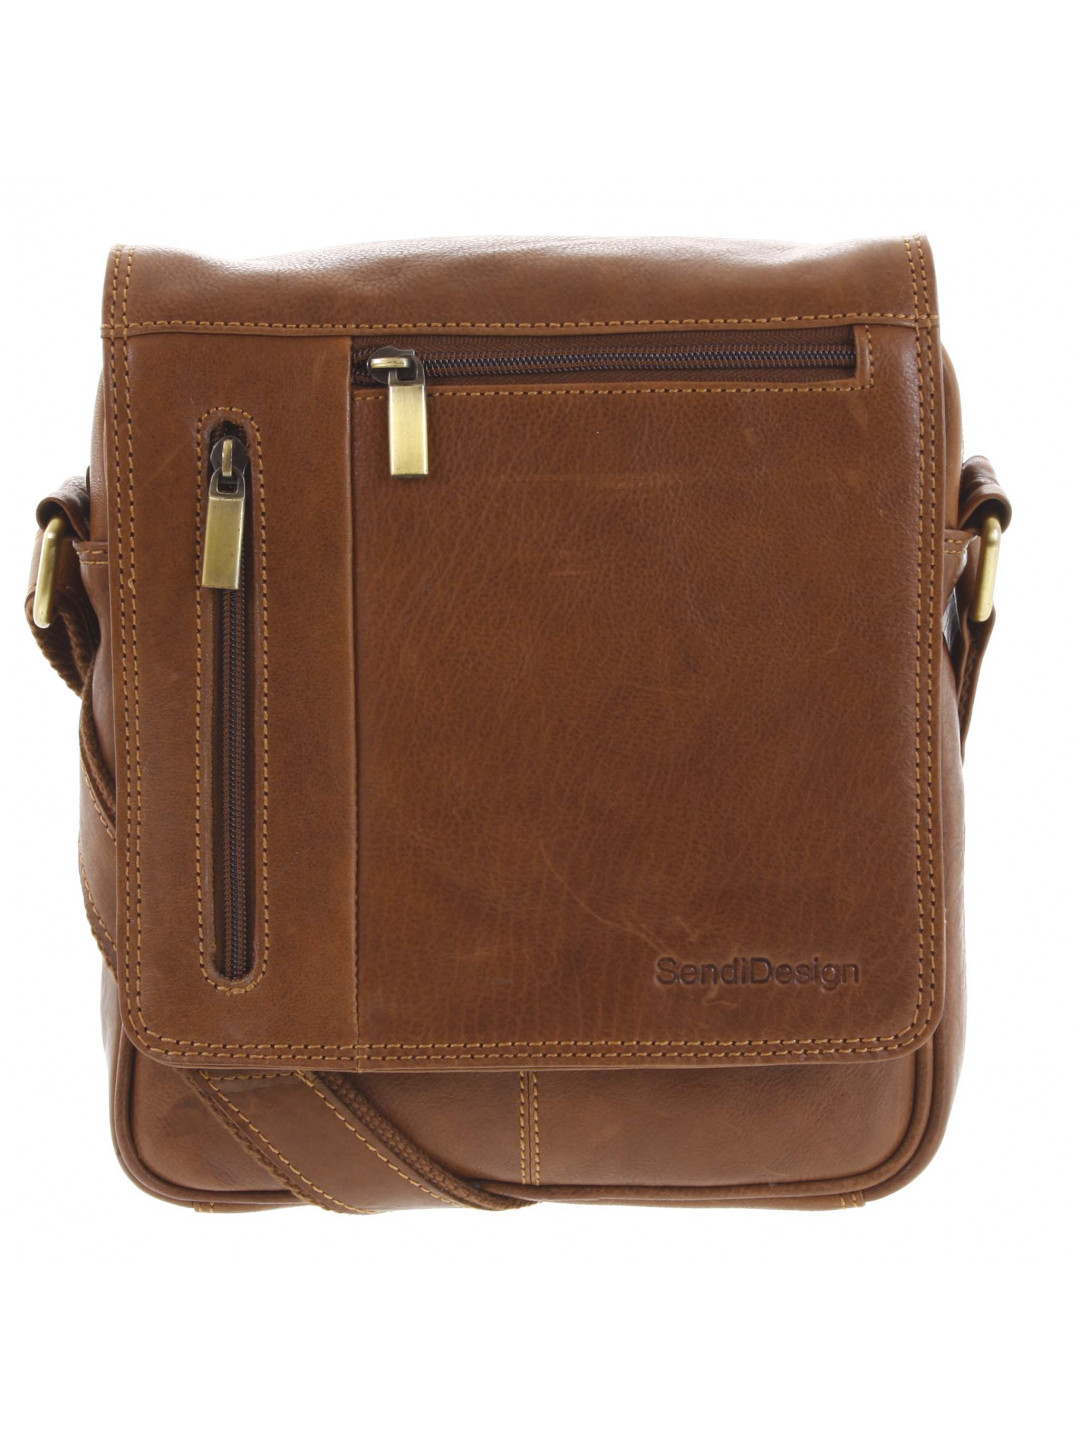 Pánská kožená taška přes rameno hnědá – SendiDesign Thoreau